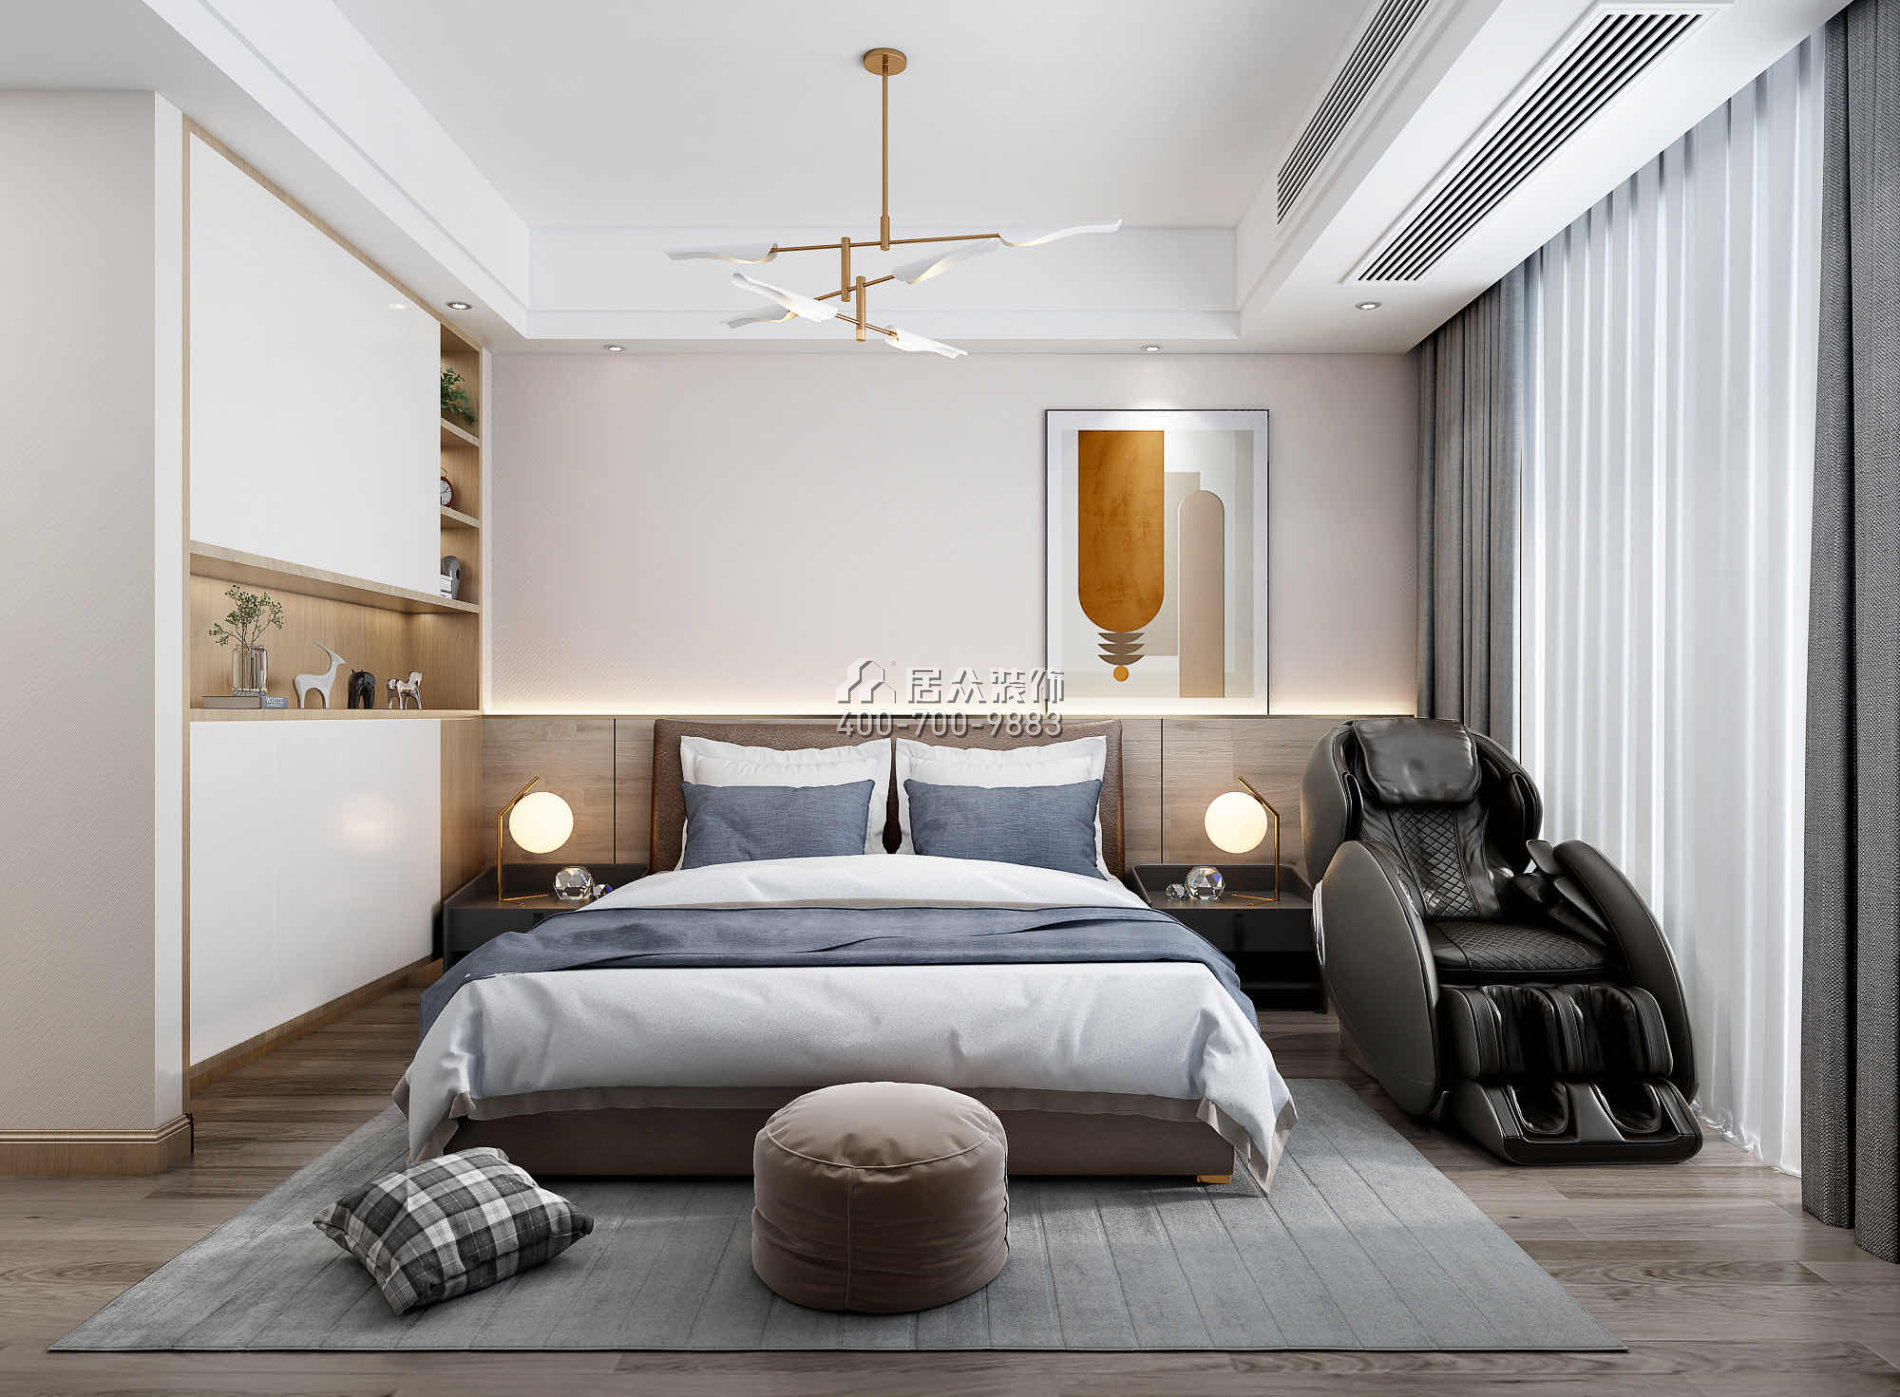 中泰上境260平方米现代简约风格别墅户型卧室装修效果图